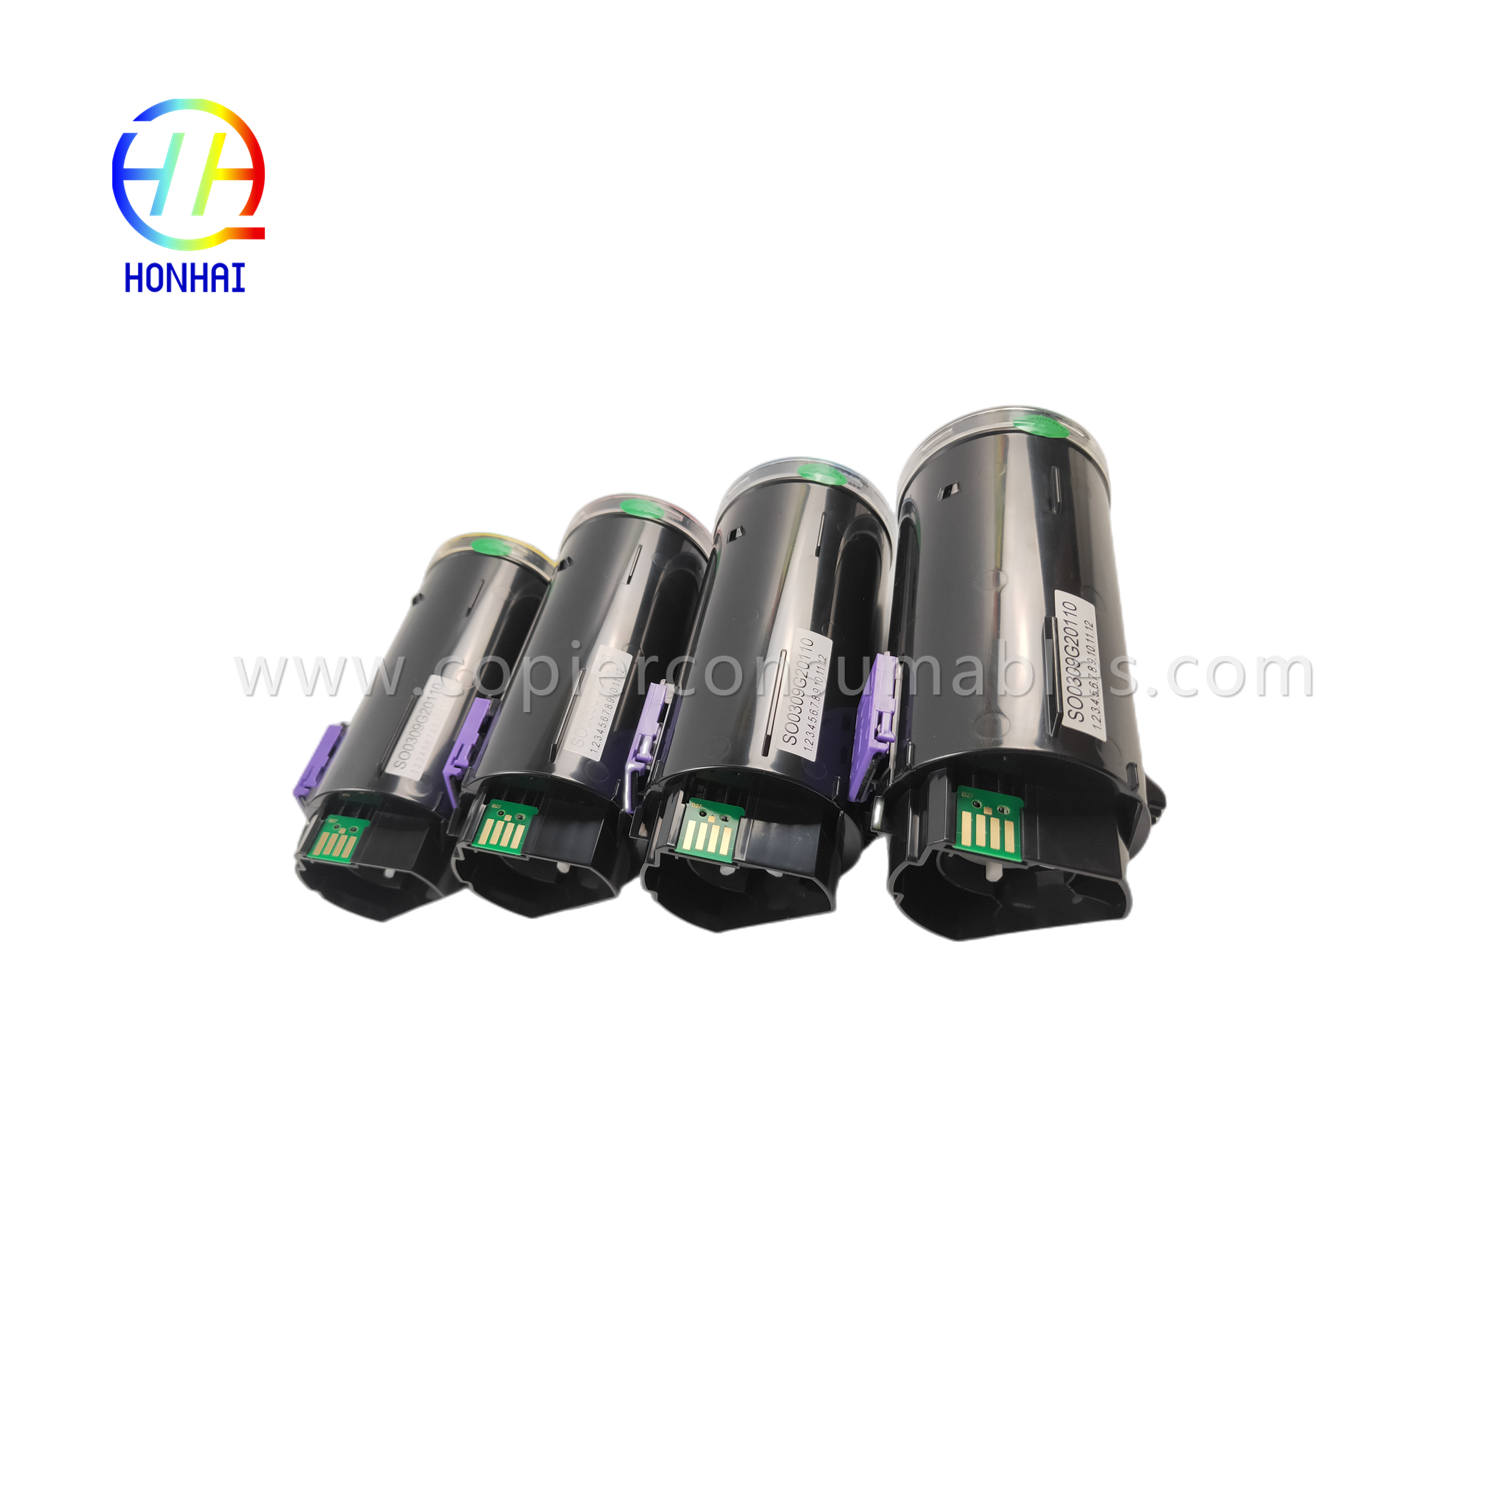 https://www.copierconsumables.com/toner-cartridge-set-imported-powder-for-ricoh-imc530-imc530f-imc530fb-ref-418240-ref-418241-ref-418242-ref-418243-